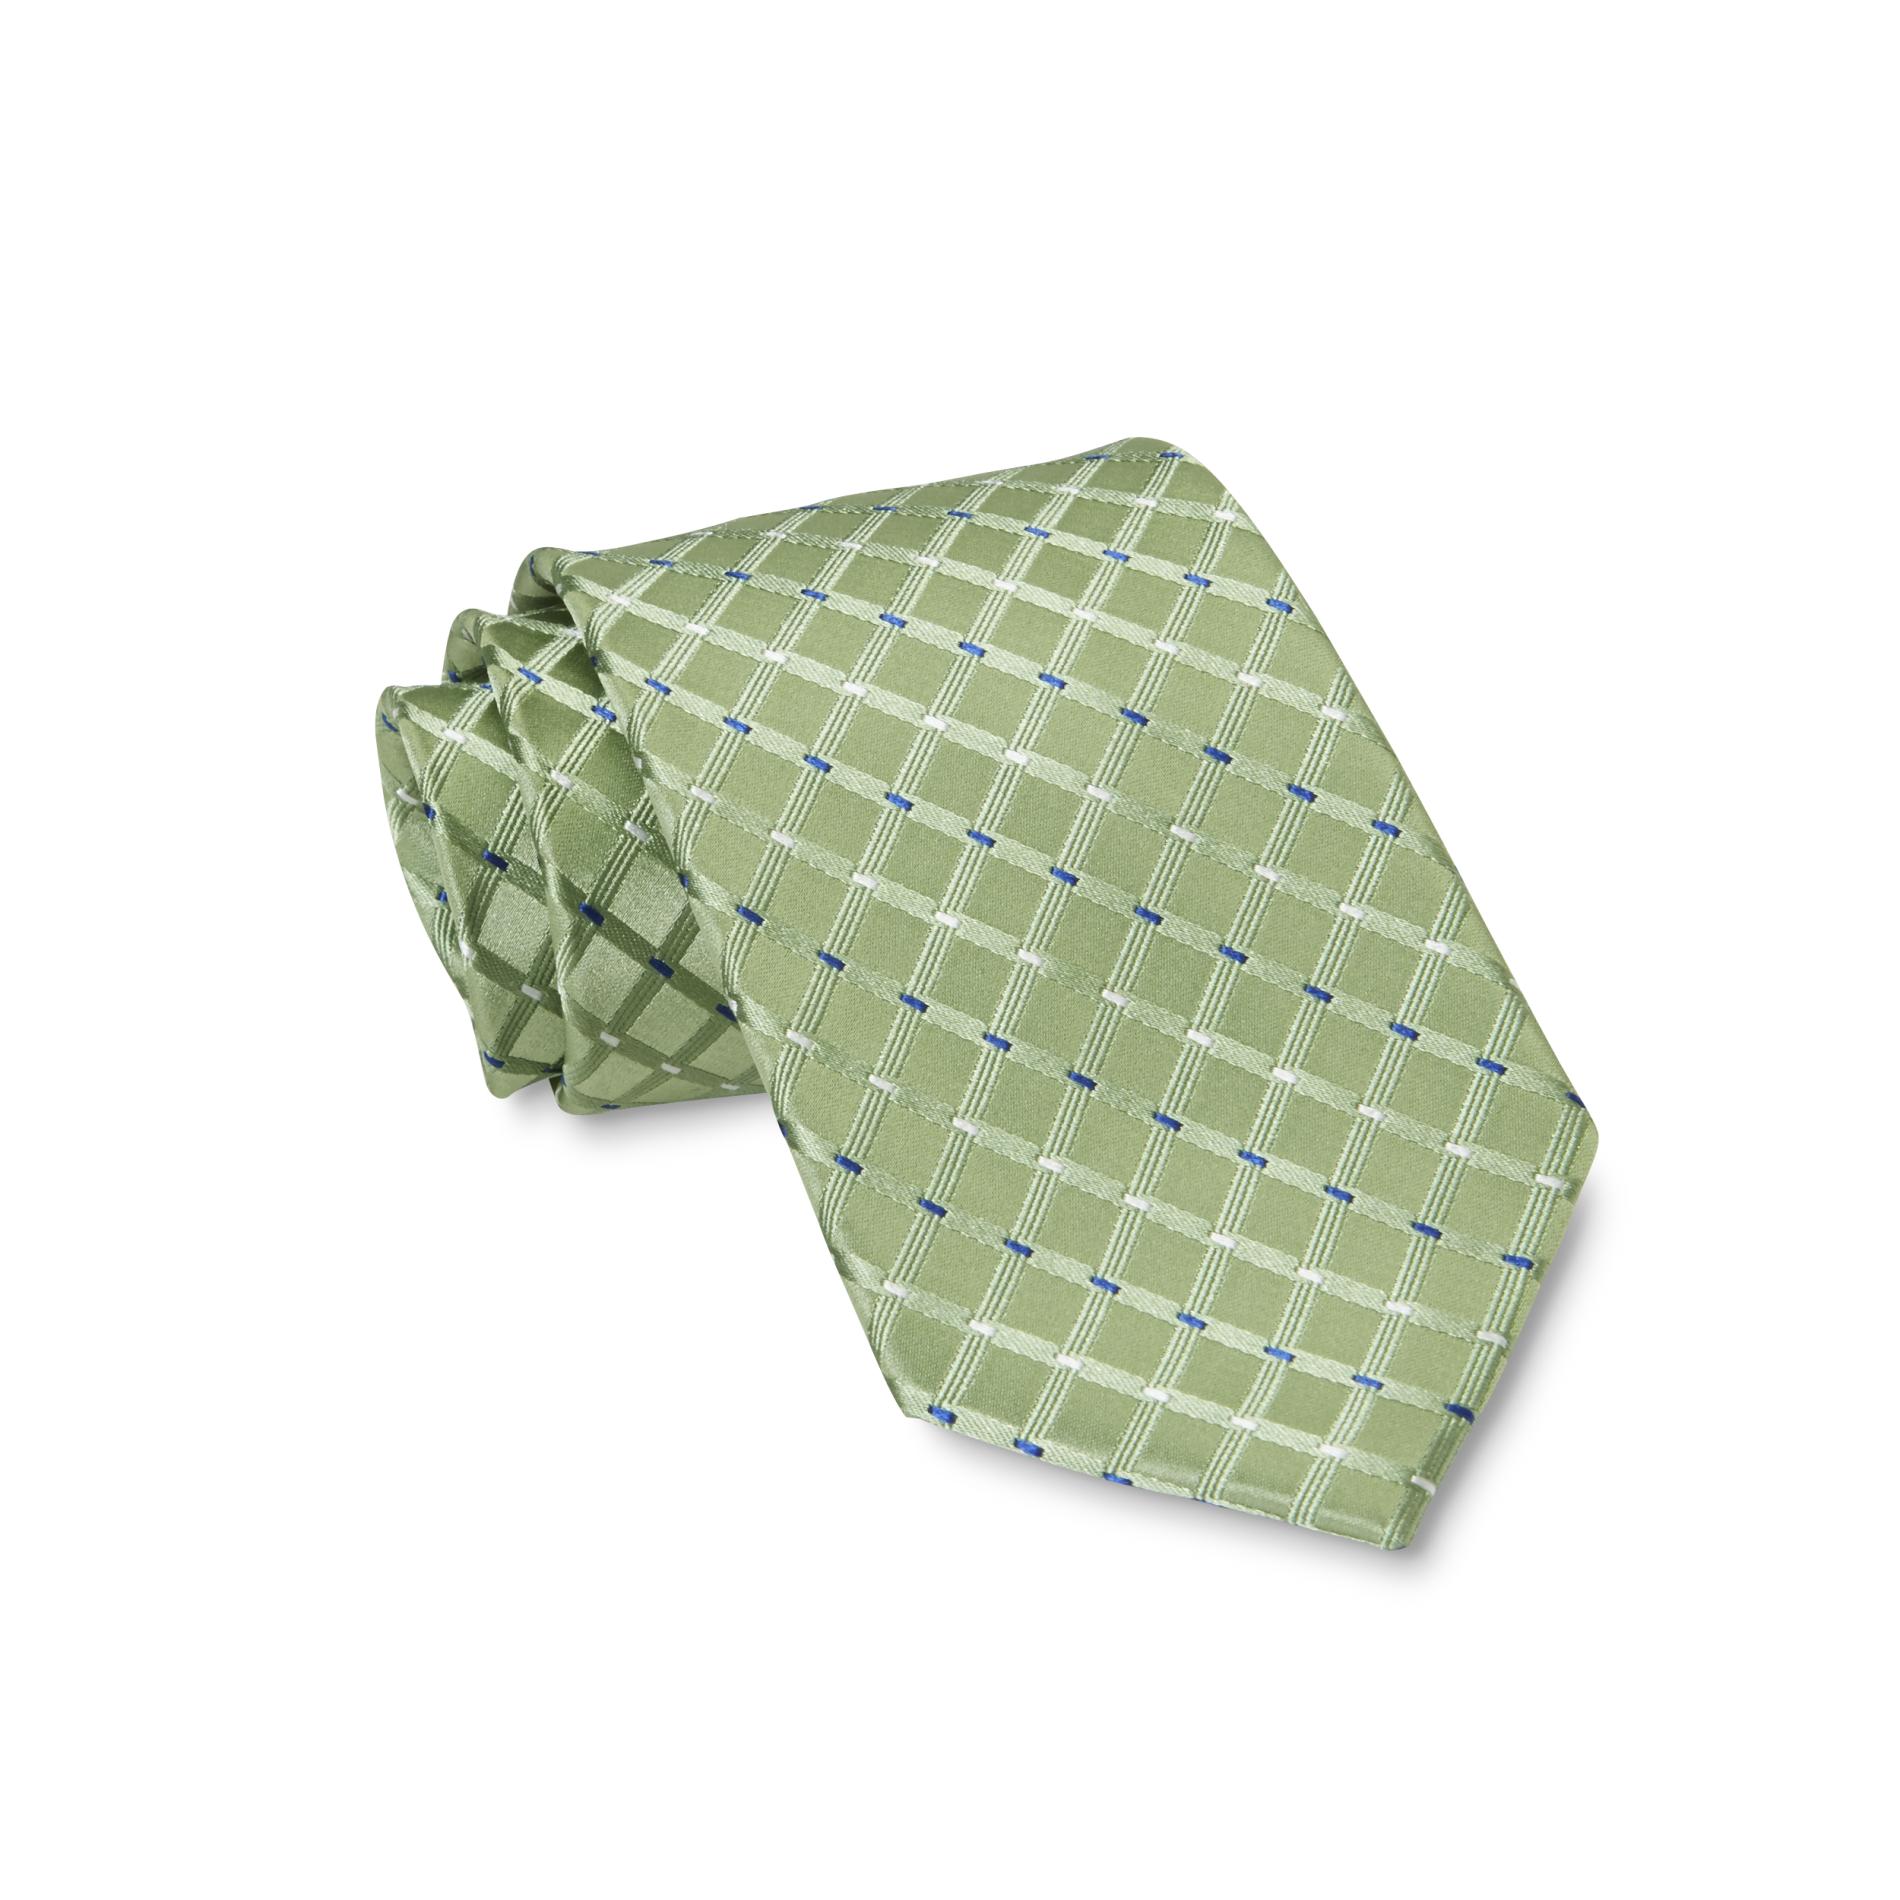 Covington Men's Necktie - Windowpane